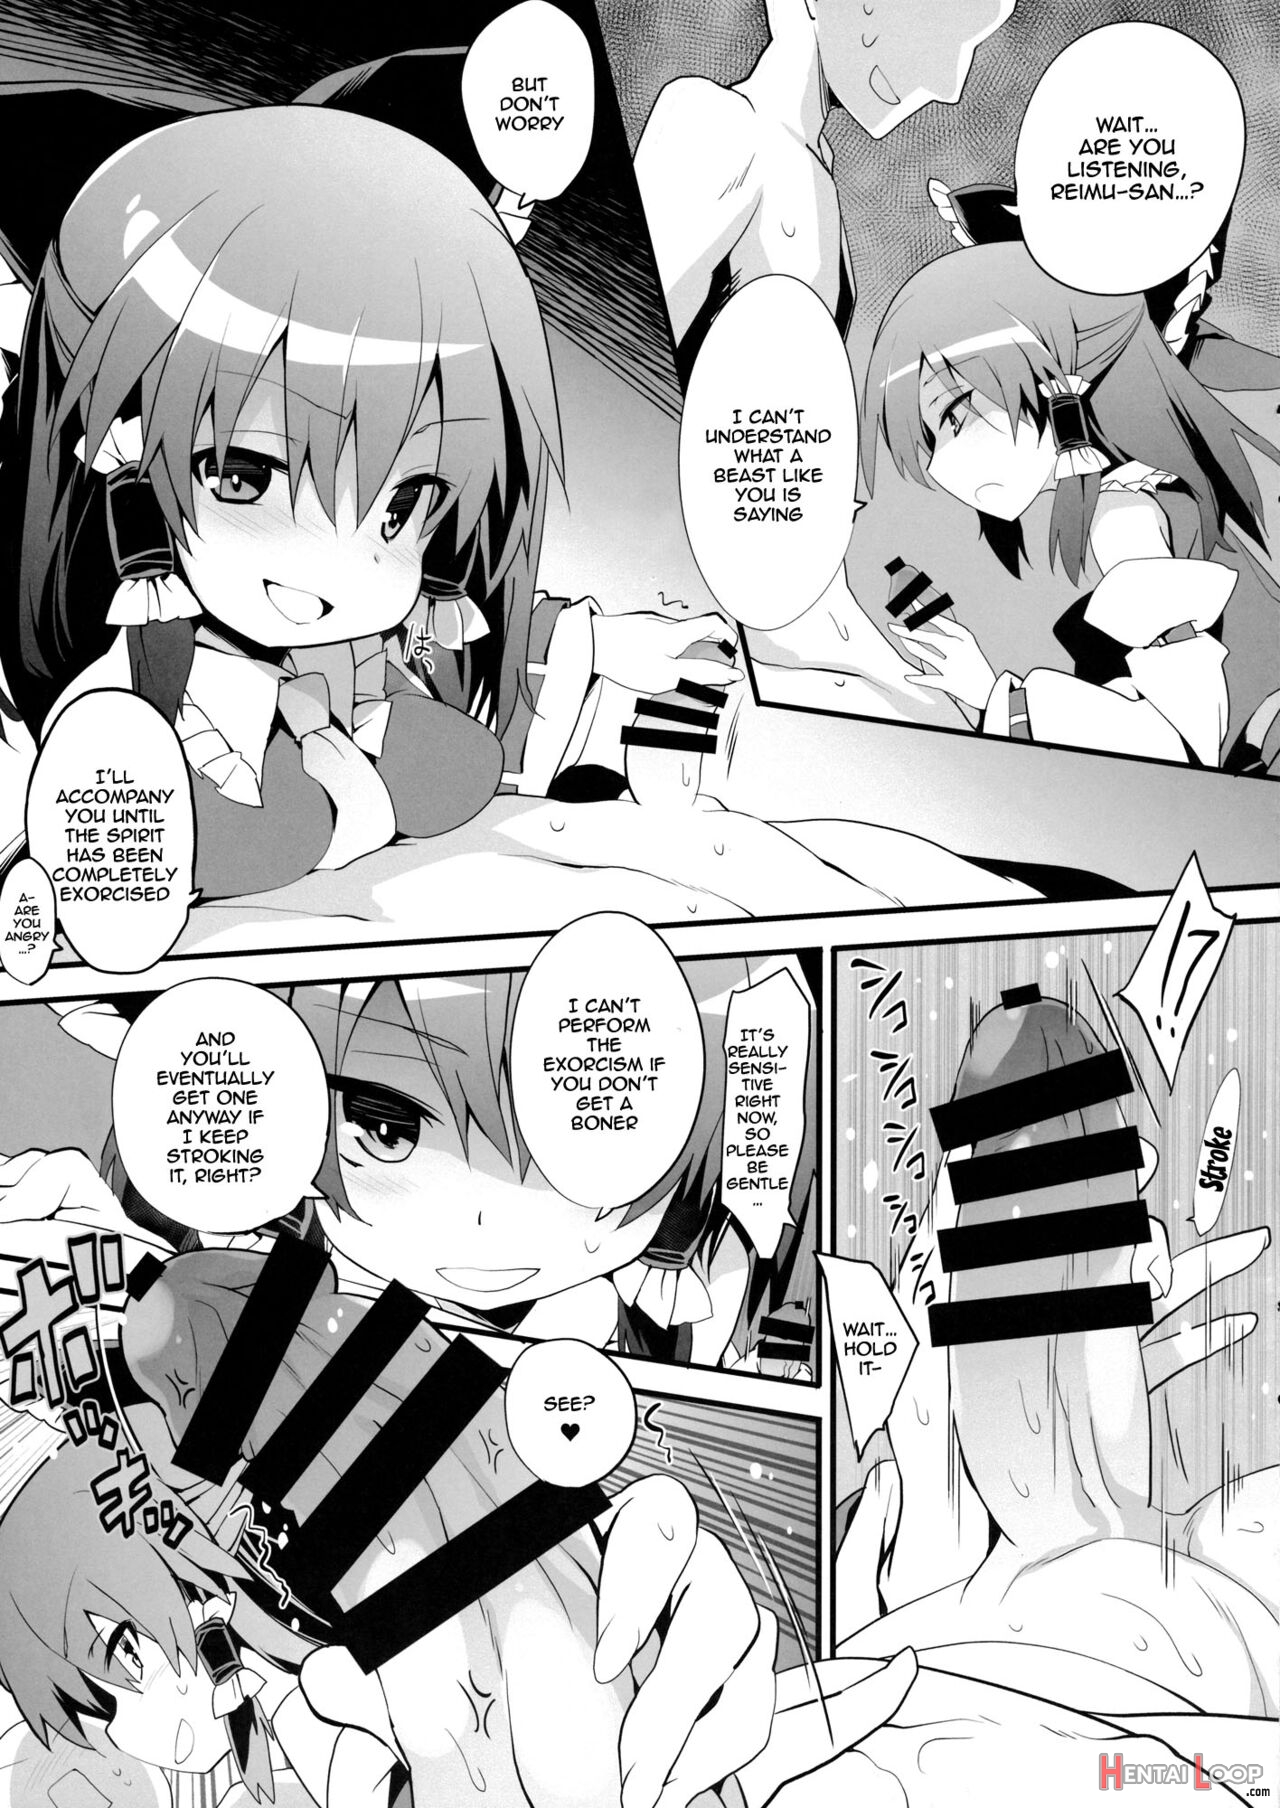 Reimu-san's Purification page 8